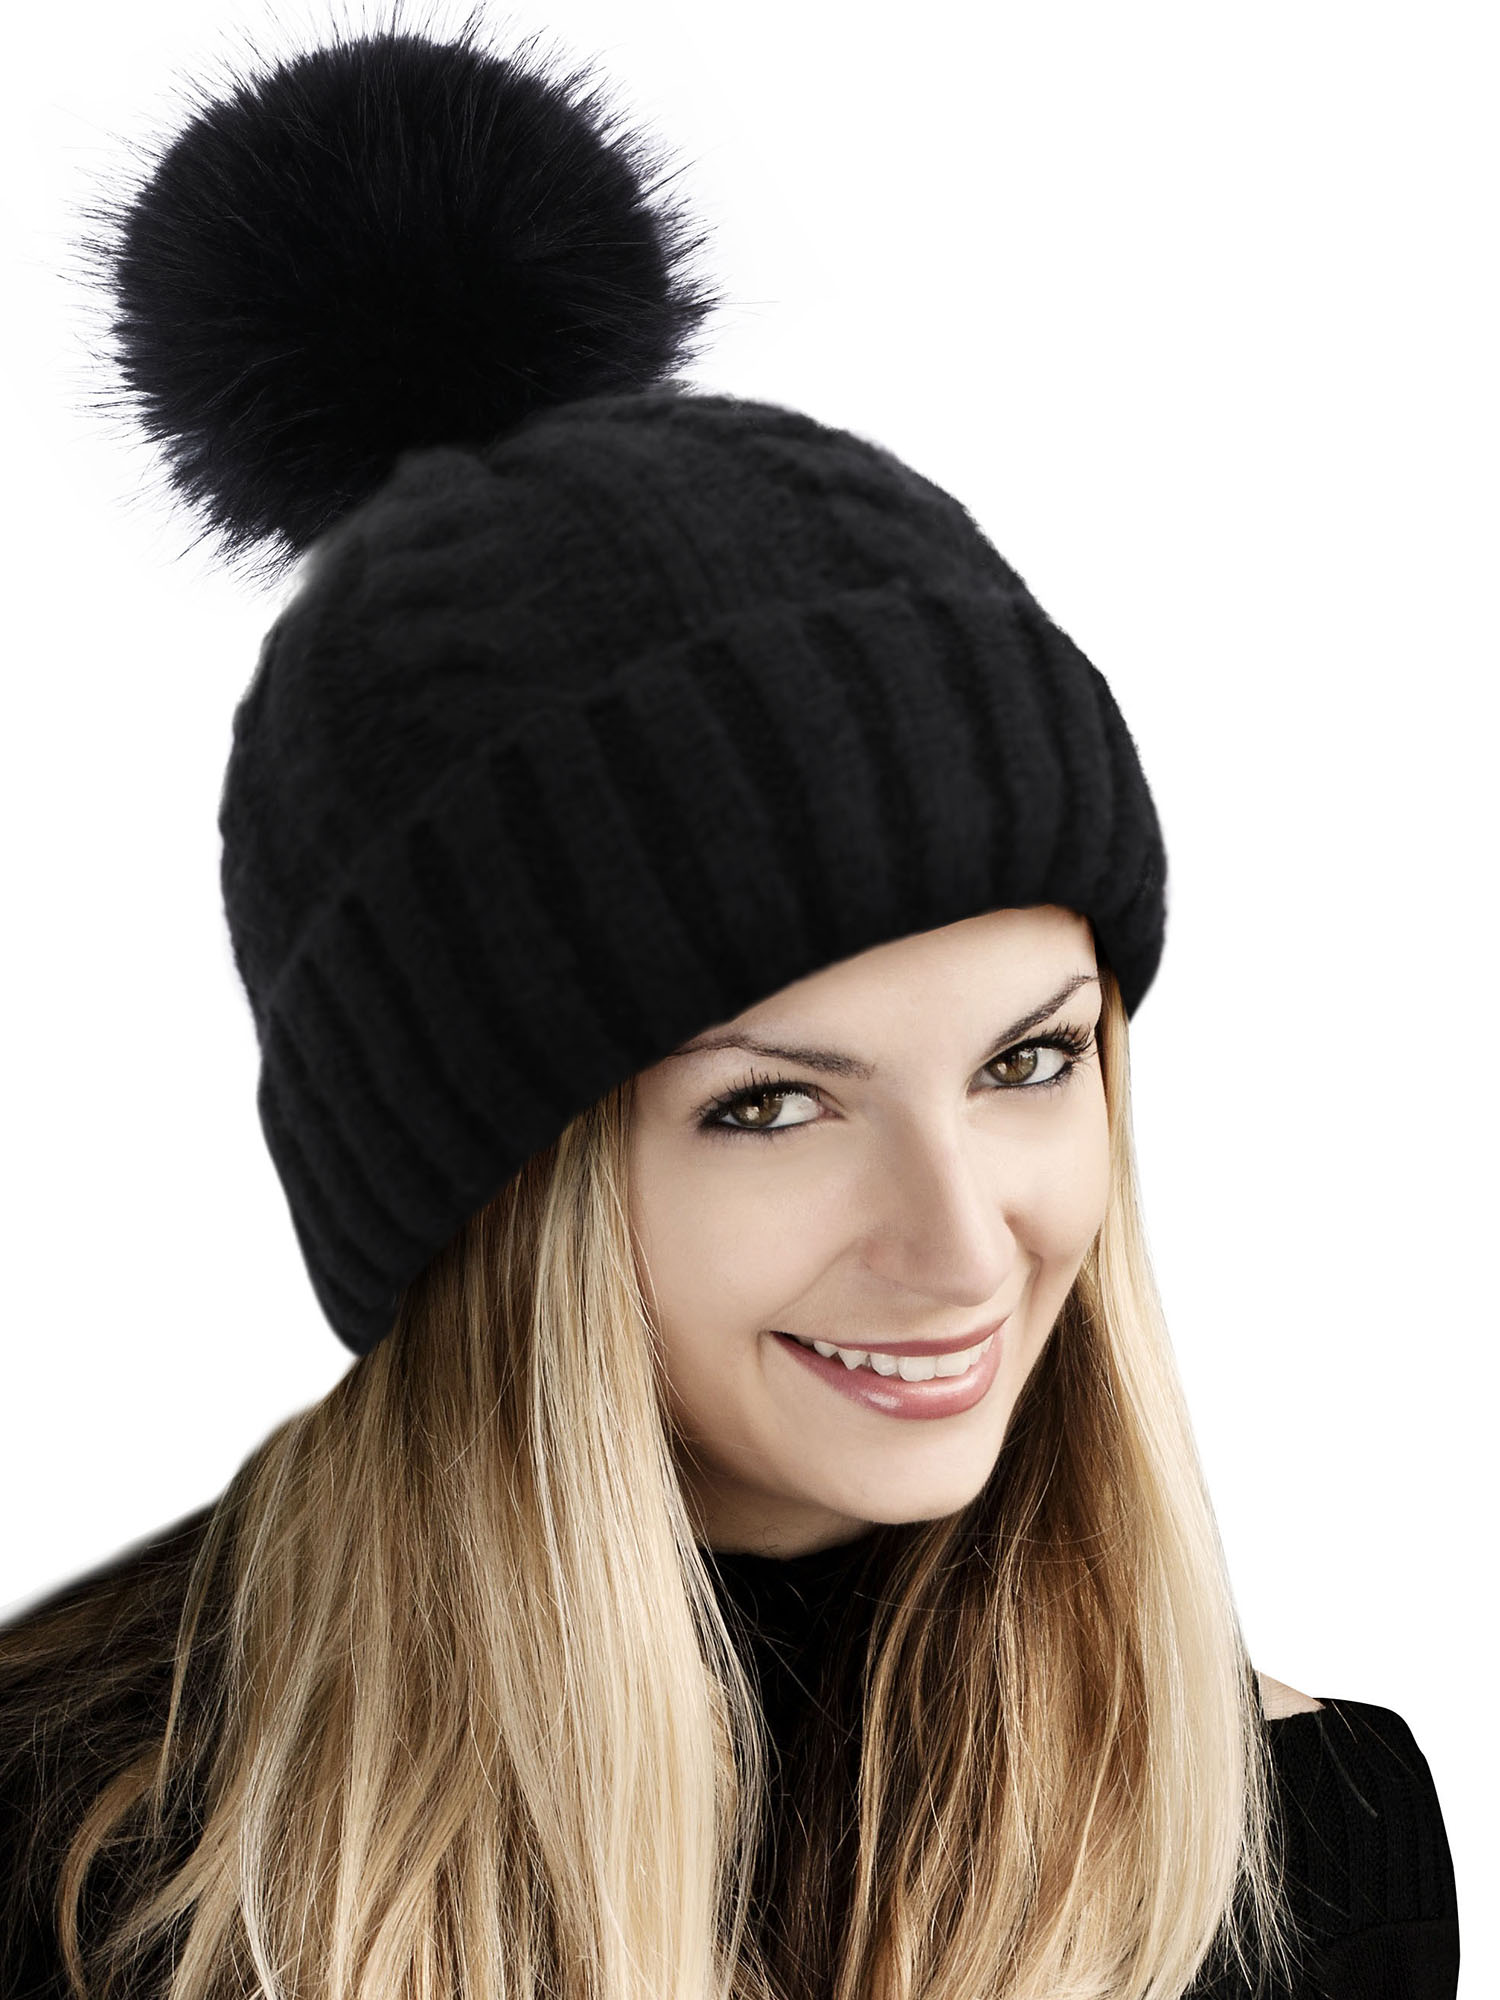 Winter Hat Beanie for Women Knit Slouchy Ski Hat Faux Fur Beanies Pompom, Black Beanie, Black pom Beanie - image 3 of 4